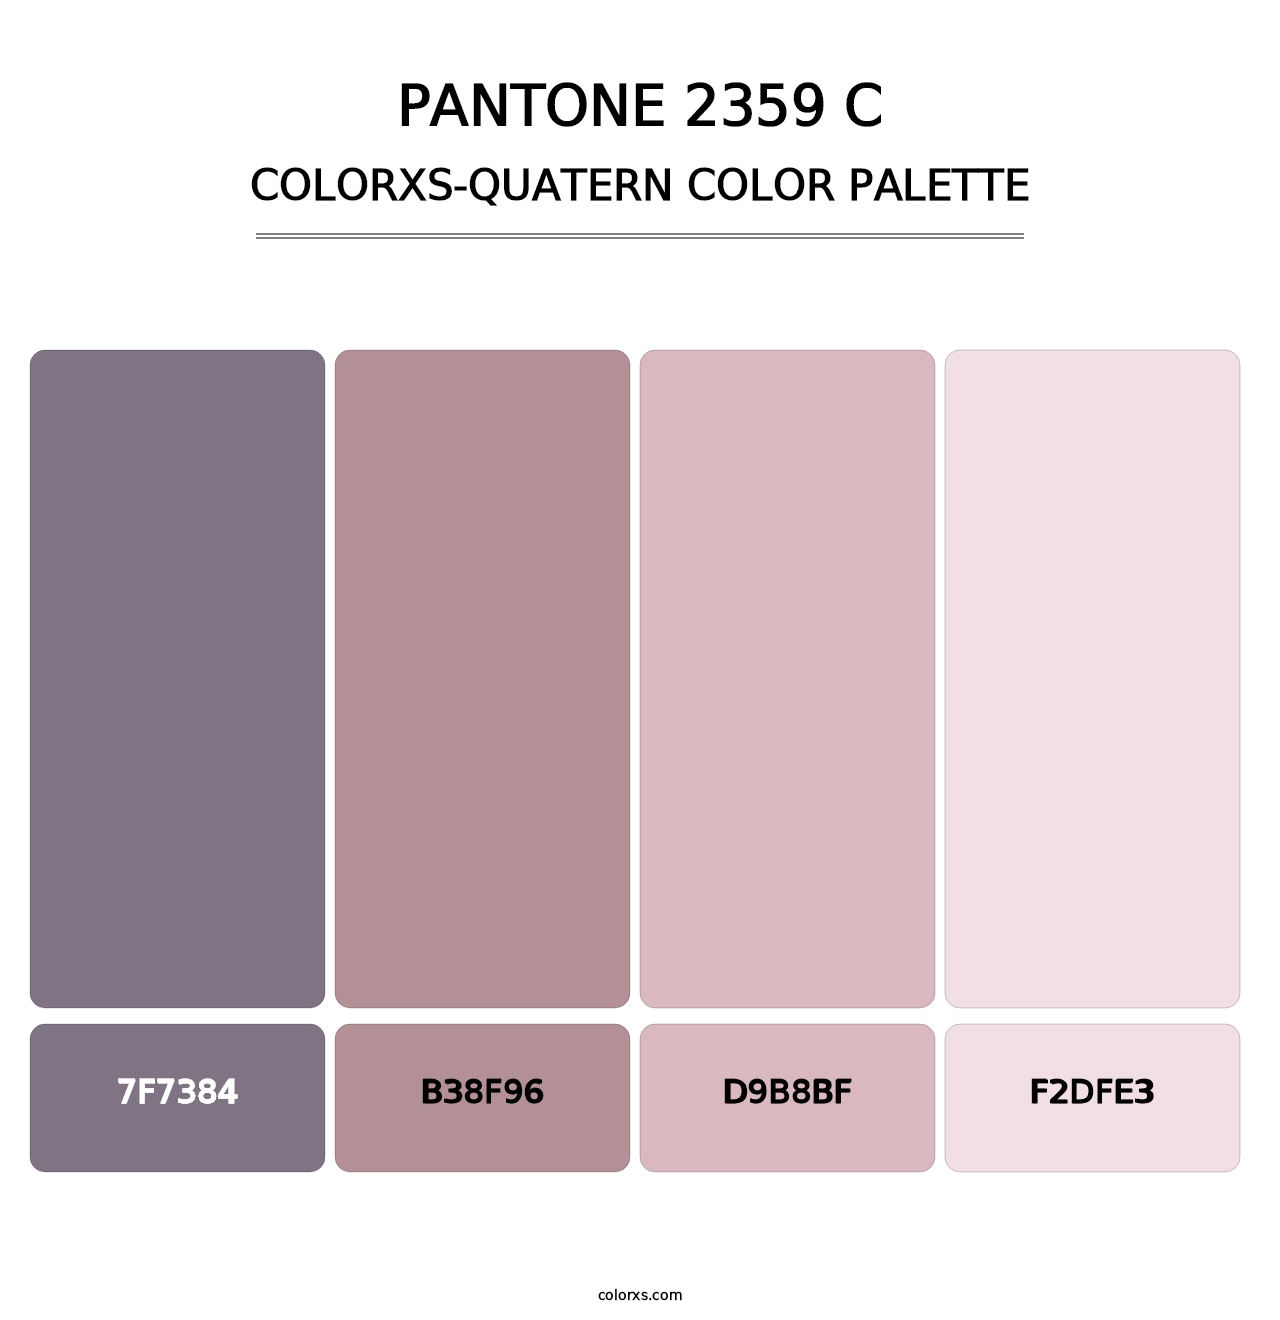 PANTONE 2359 C - Colorxs Quatern Palette